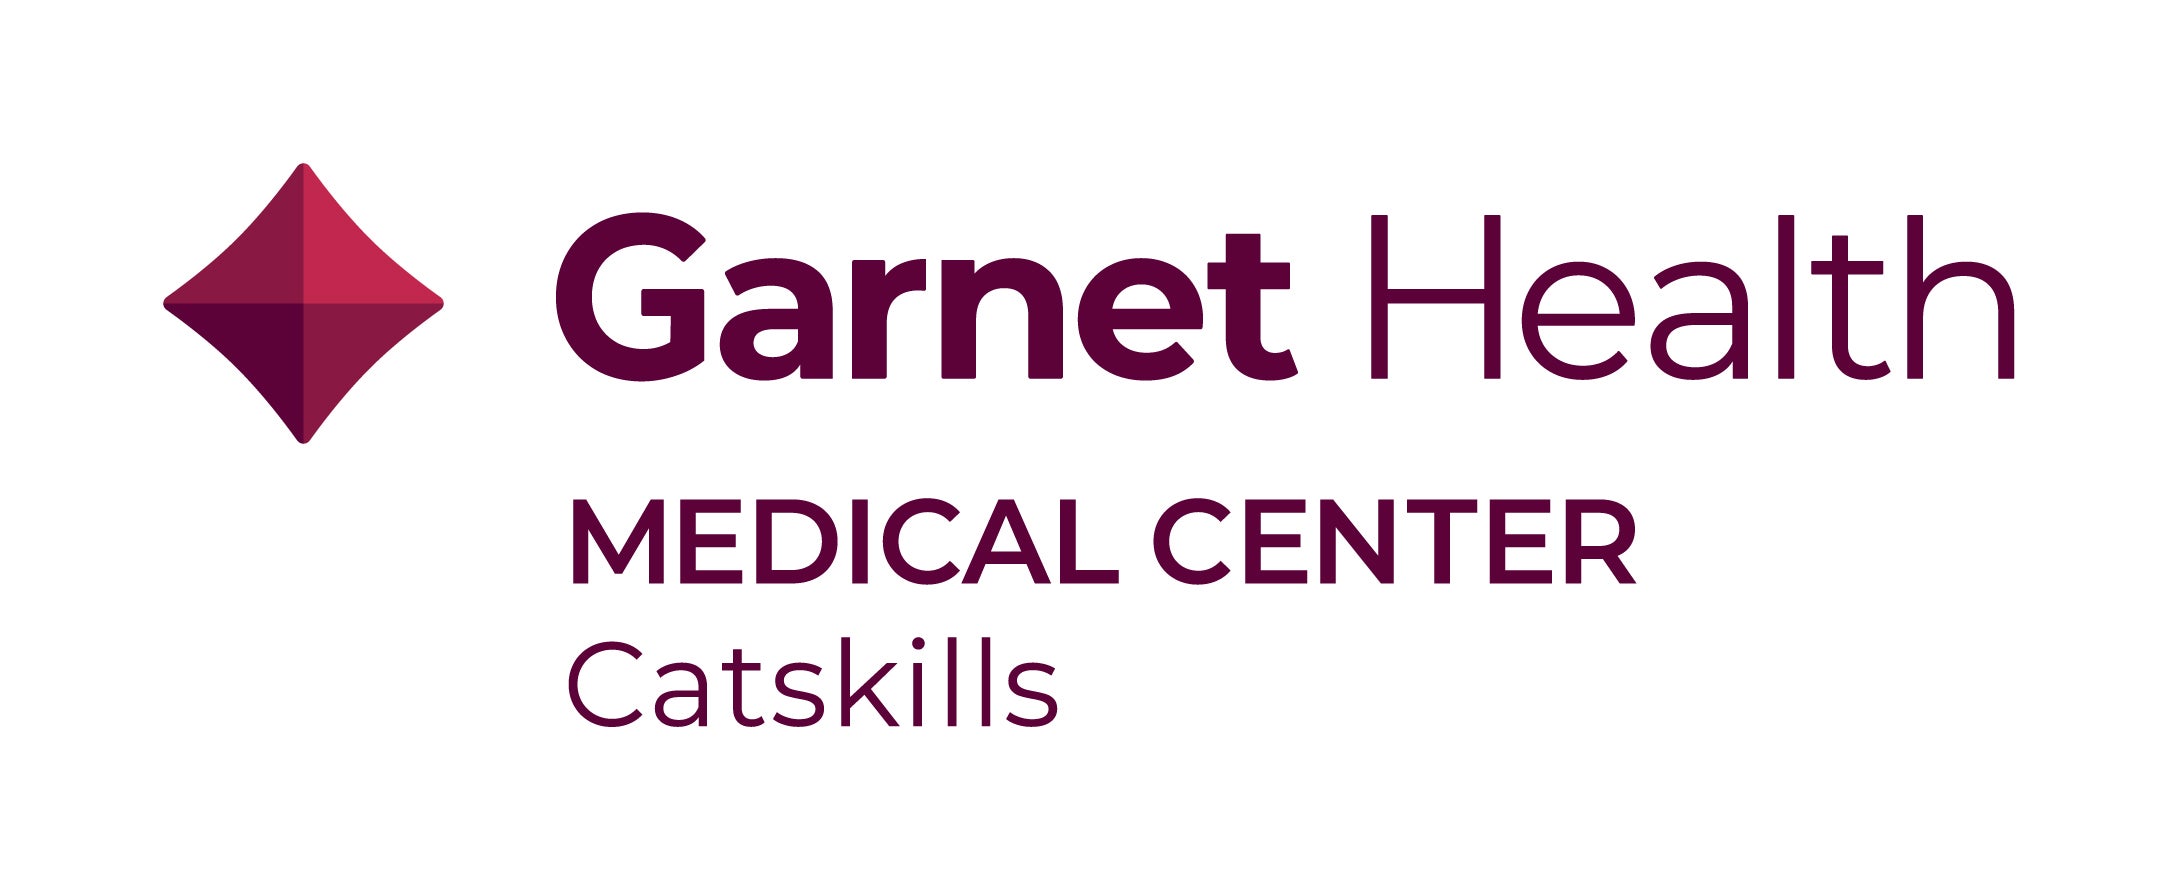 Garnet Health Medical Center – Catskills